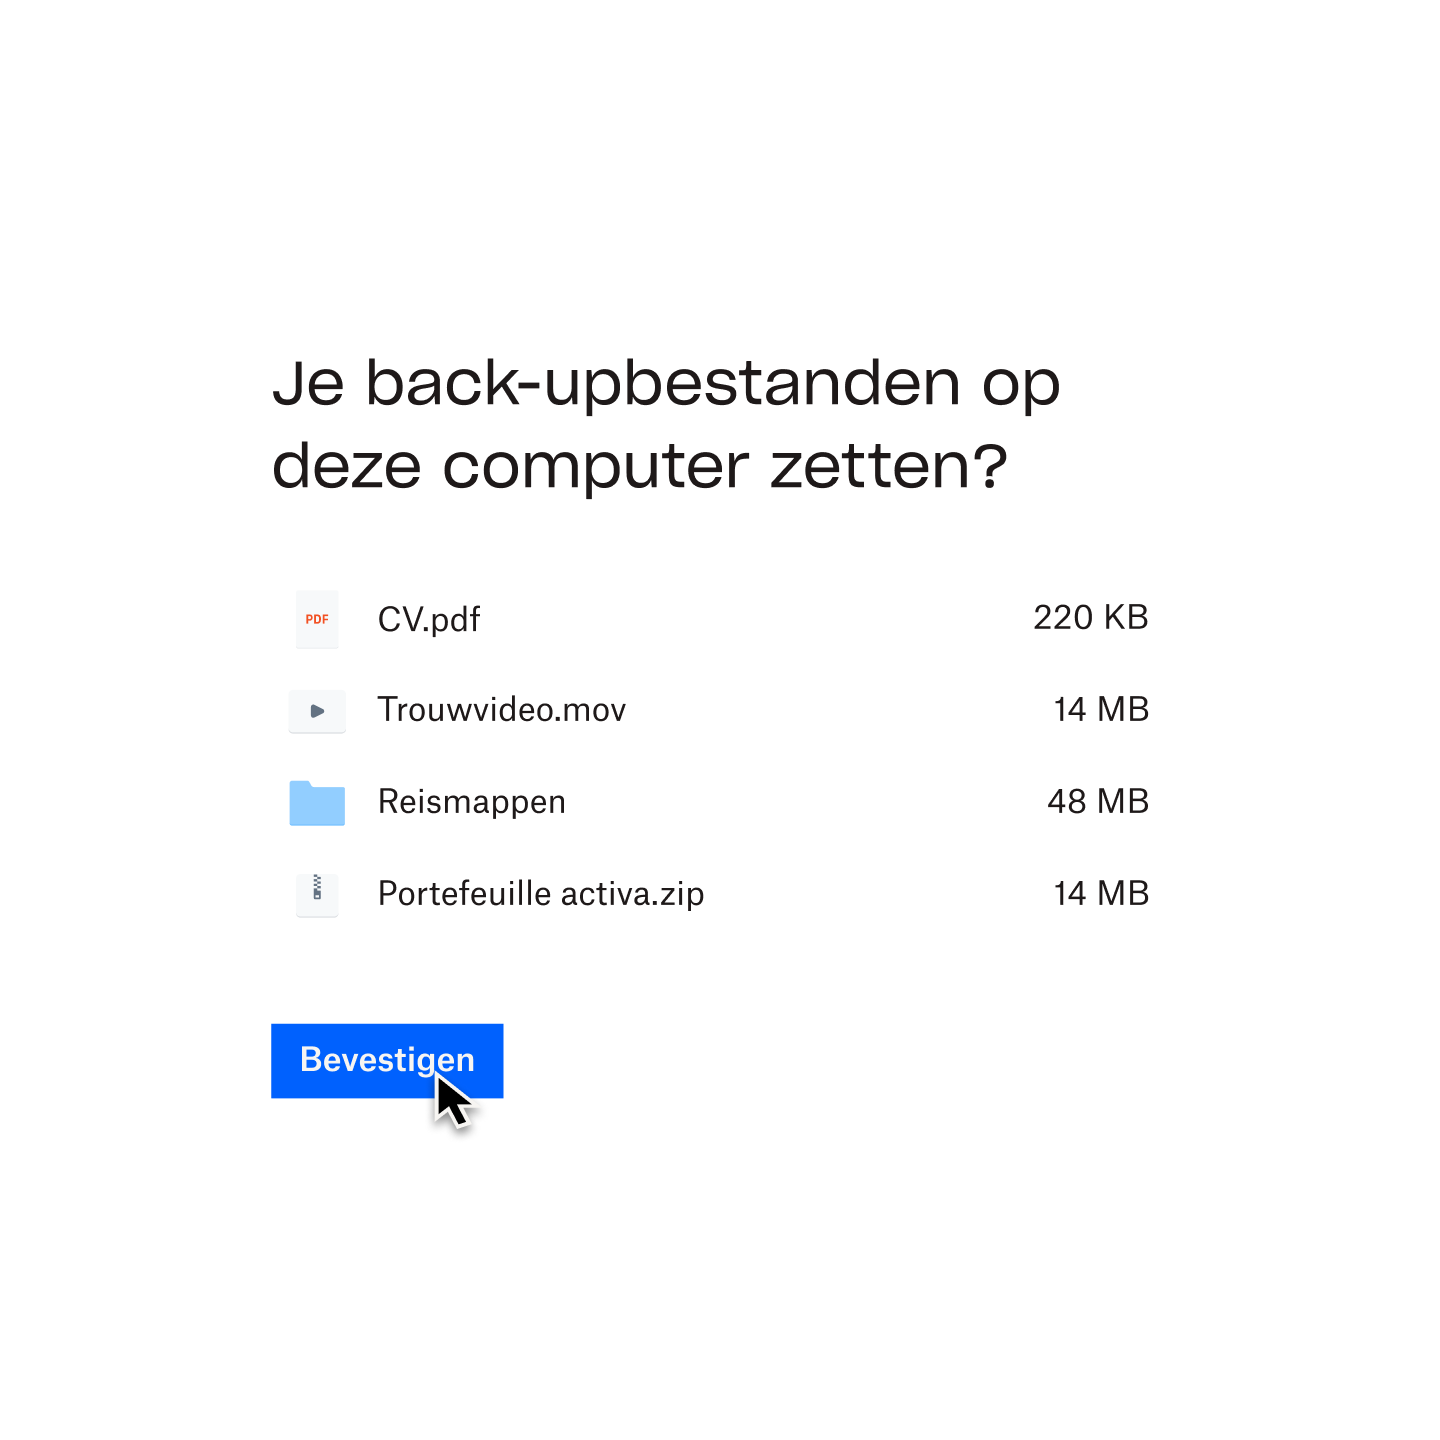 Een gebruiker die op een blauwe knop bevestigen klikt om een lijst van bestanden te selecteren waarvan op zijn computer een back-up wordt gemaakt